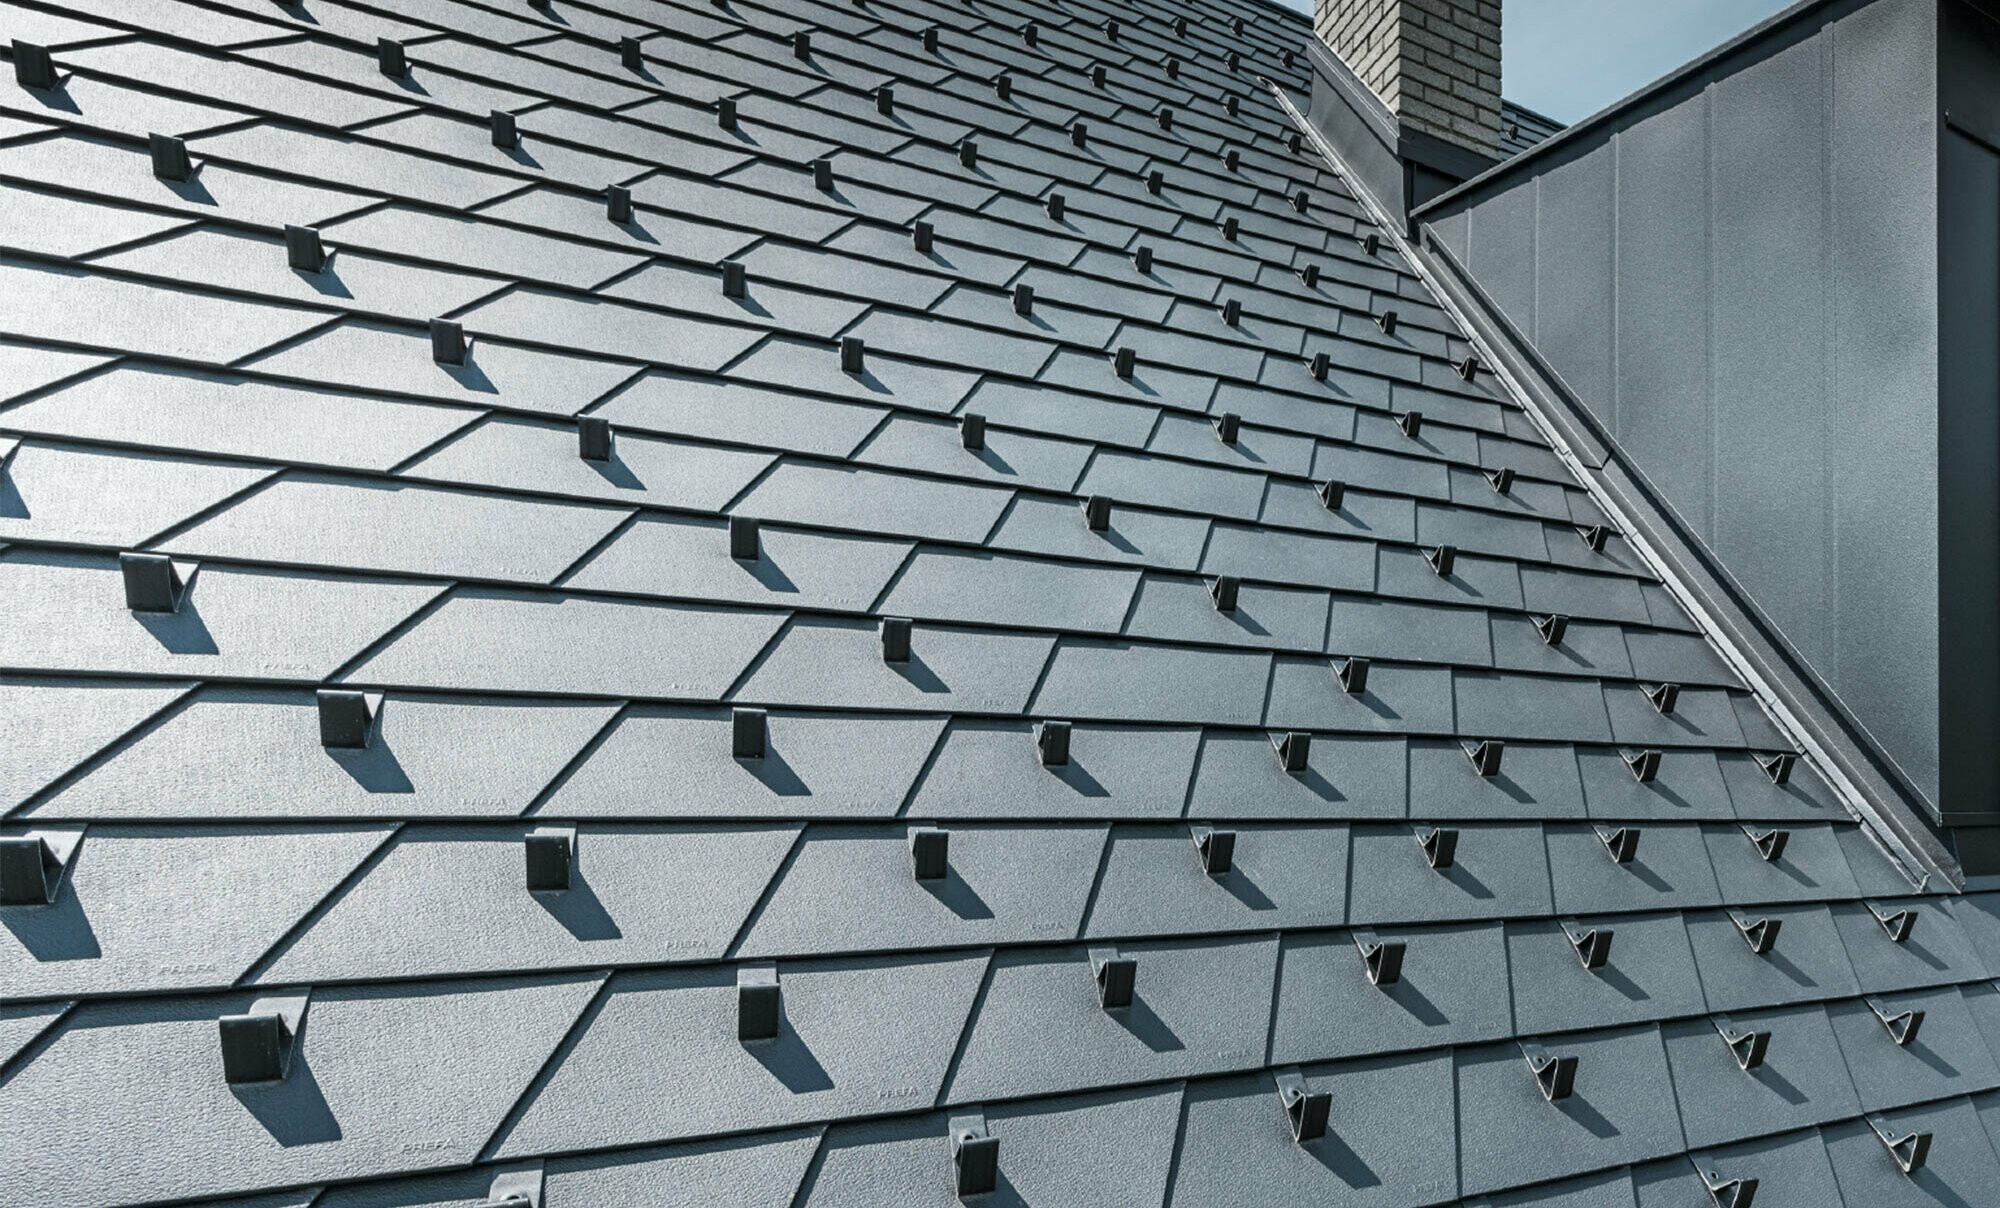 Gerenoveerd dak met PREFA dakschindels in P.10 zwart met sneeuwstoppers, dakkapel bekleed met PREFA aluminium